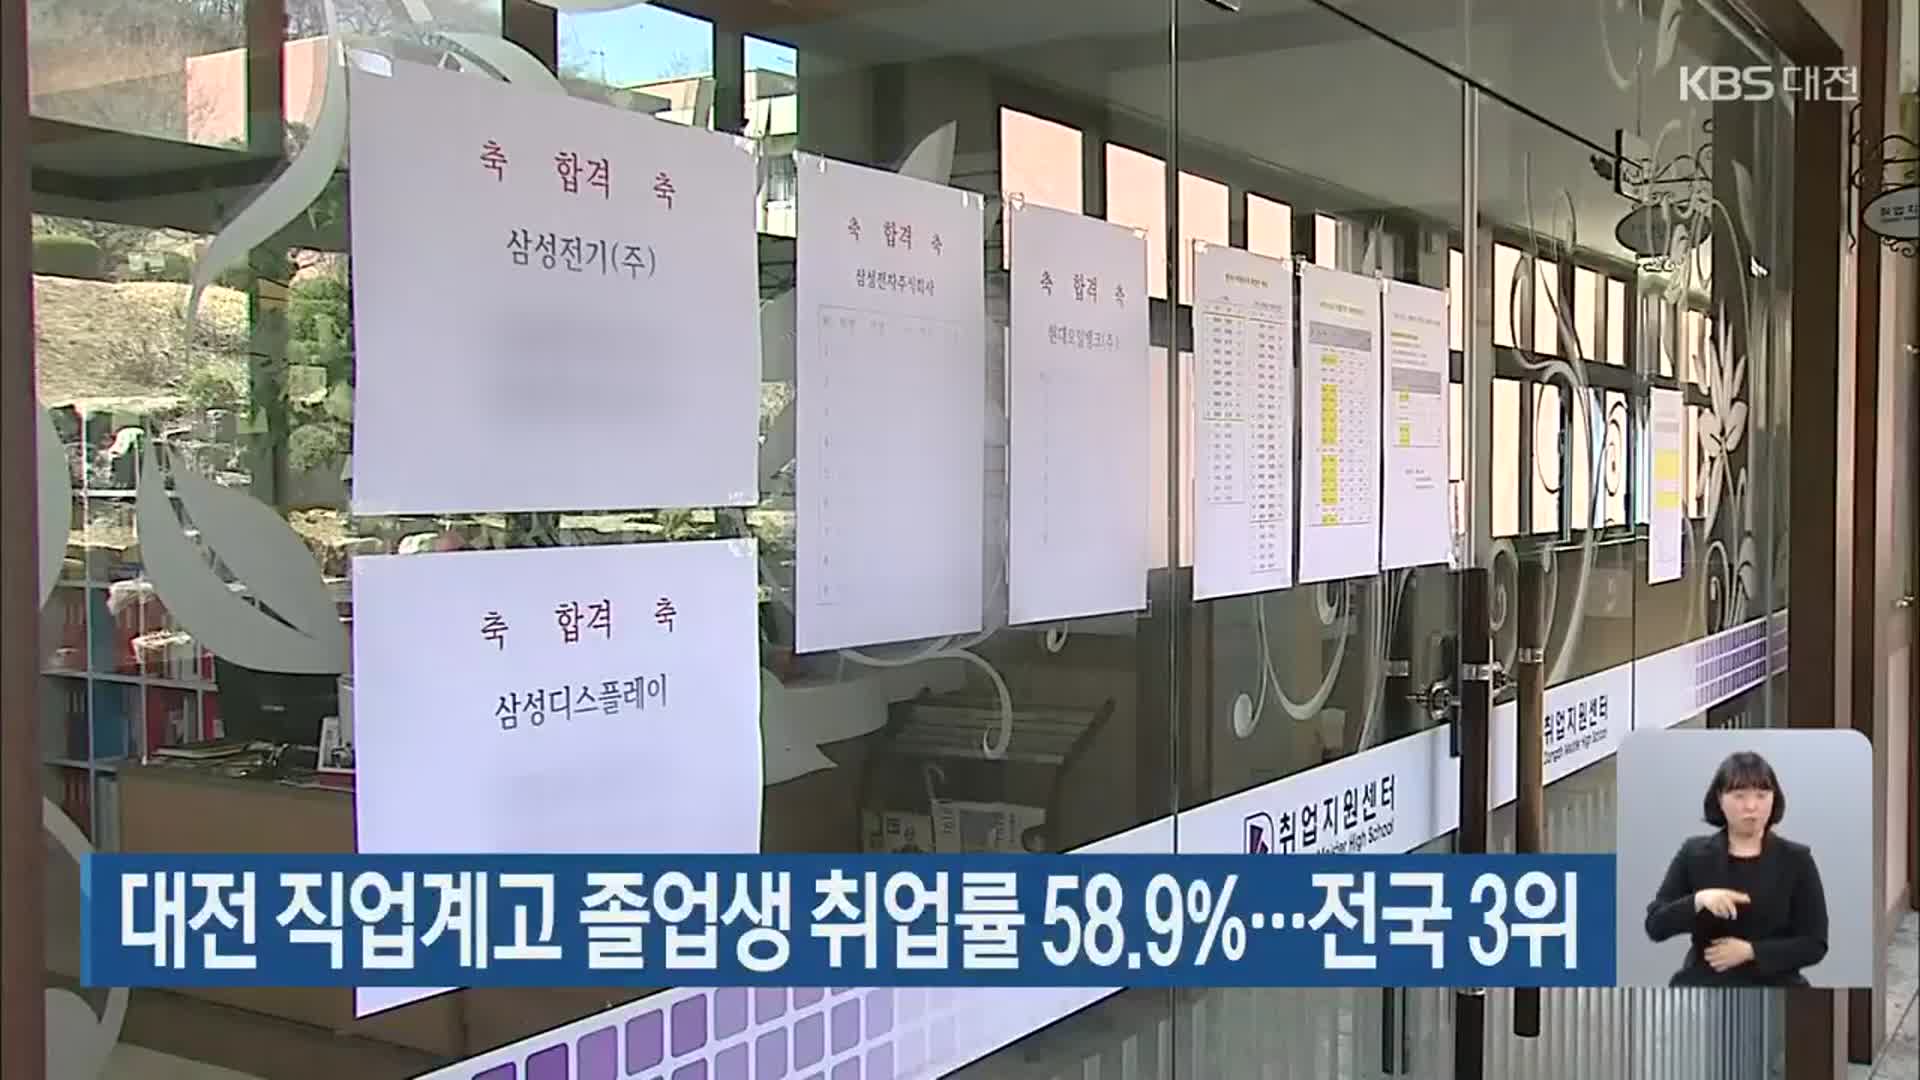 대전 직업계고 졸업생 취업률 58.9%…전국 3위